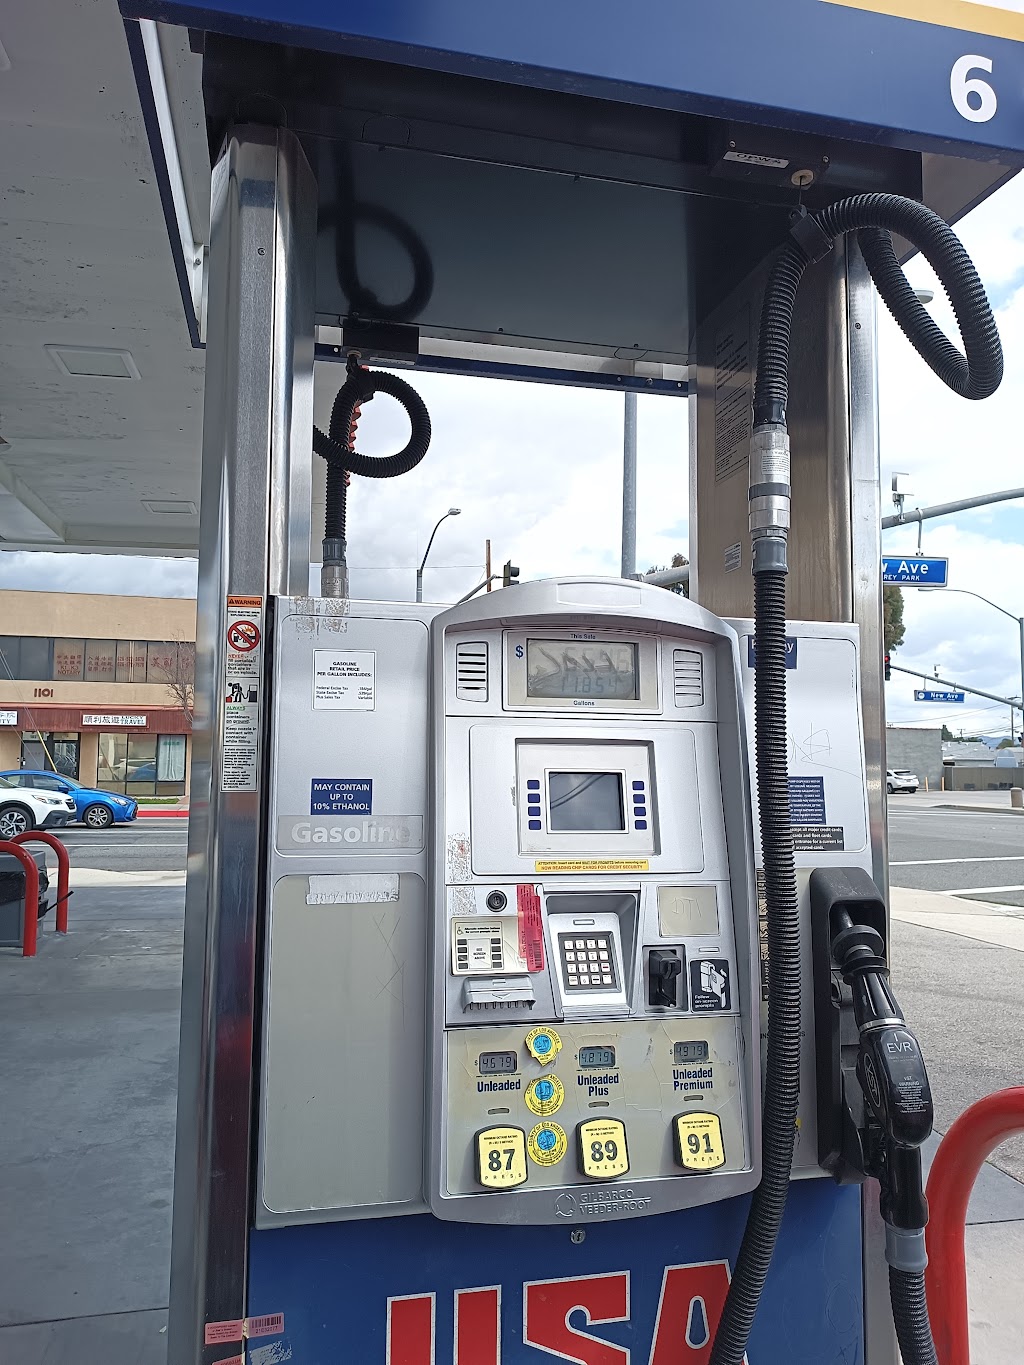 USA Gasoline | 1049 E Garvey Ave, Monterey Park, CA 91755, USA | Phone: (626) 280-6705